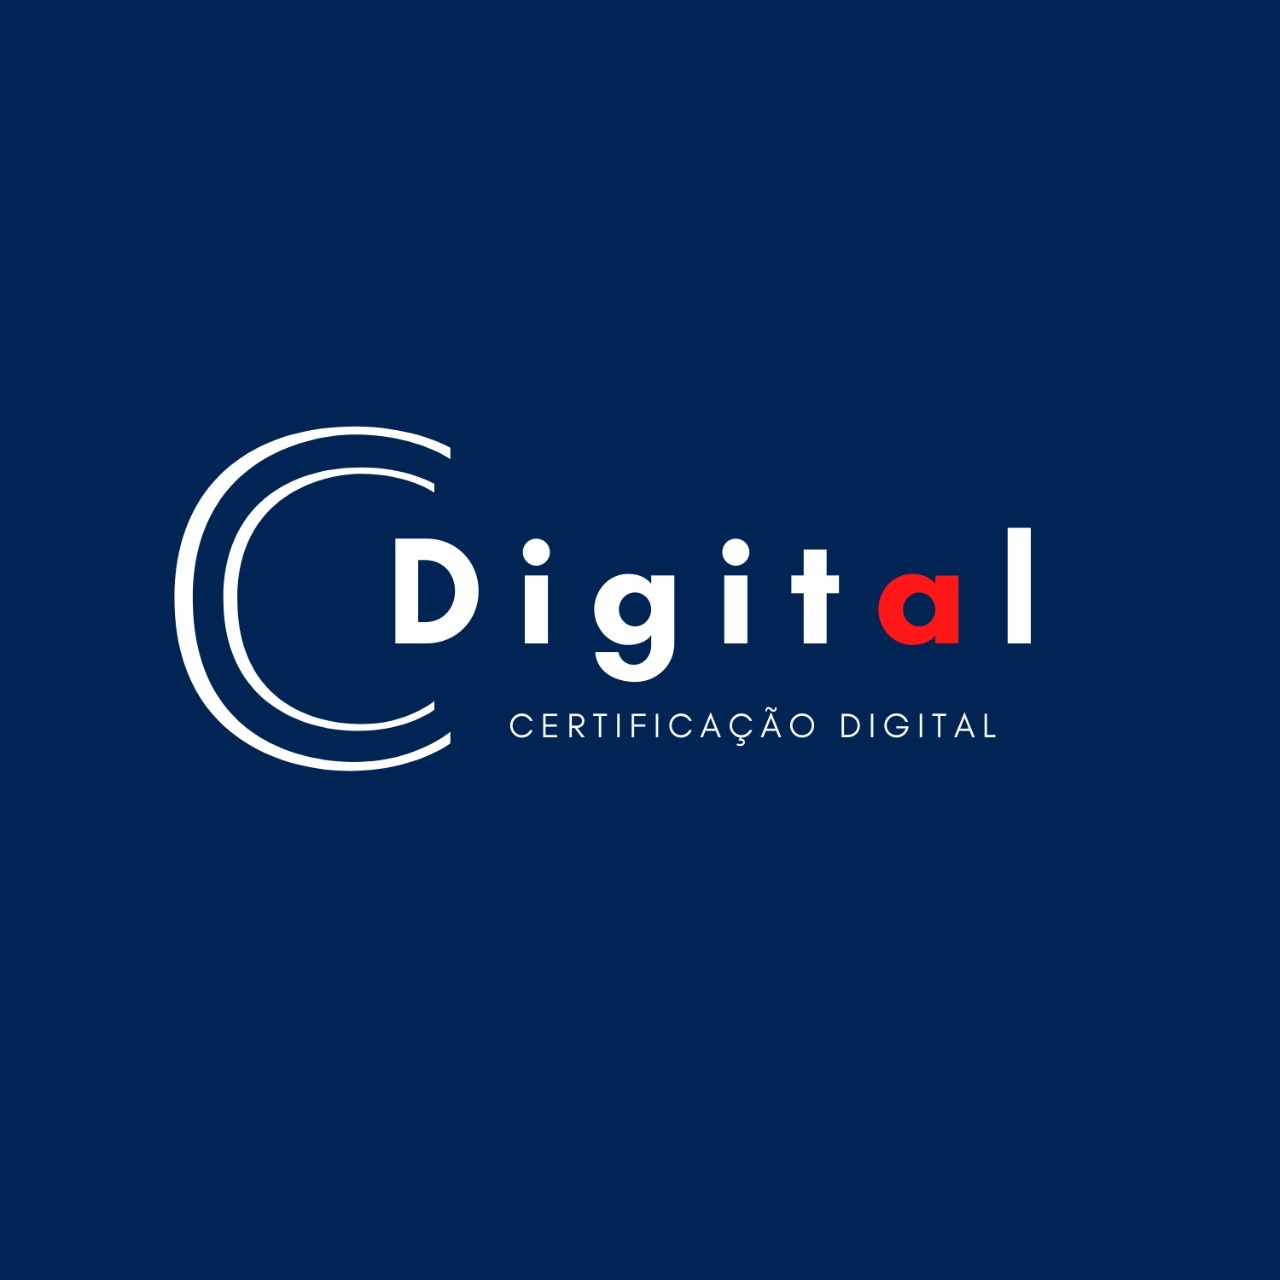 Logotipo do parceiro AR Cdigital – Ponta Grossa – 20%